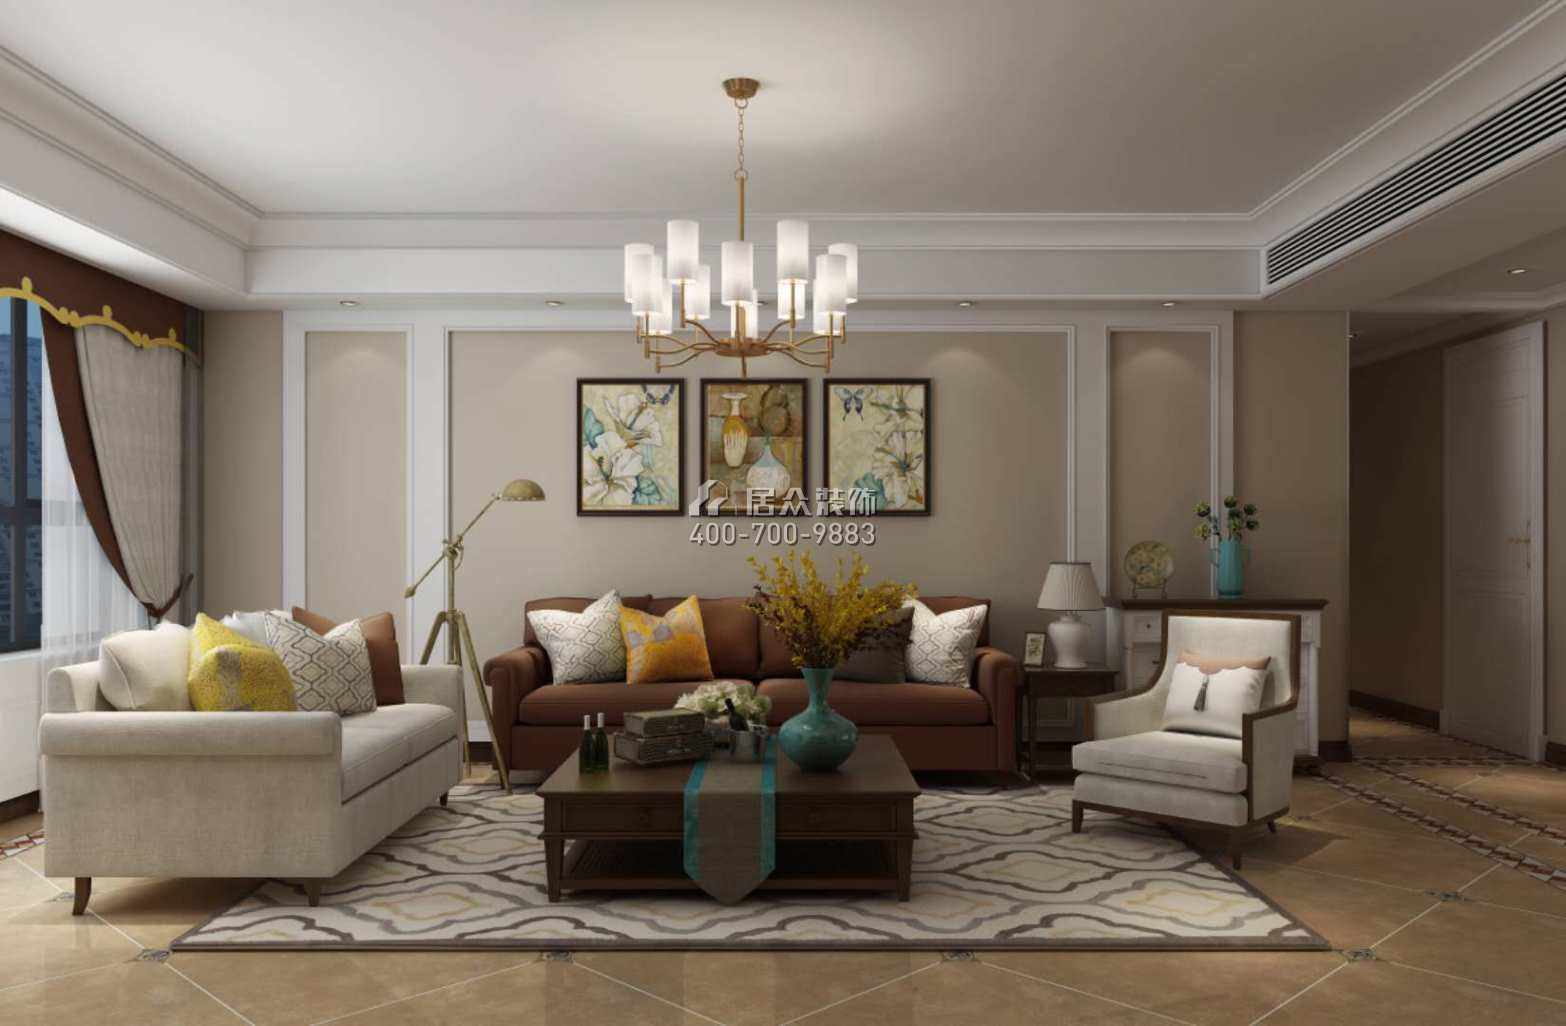 德景园142平方米美式风格平层户型客厅装修效果图